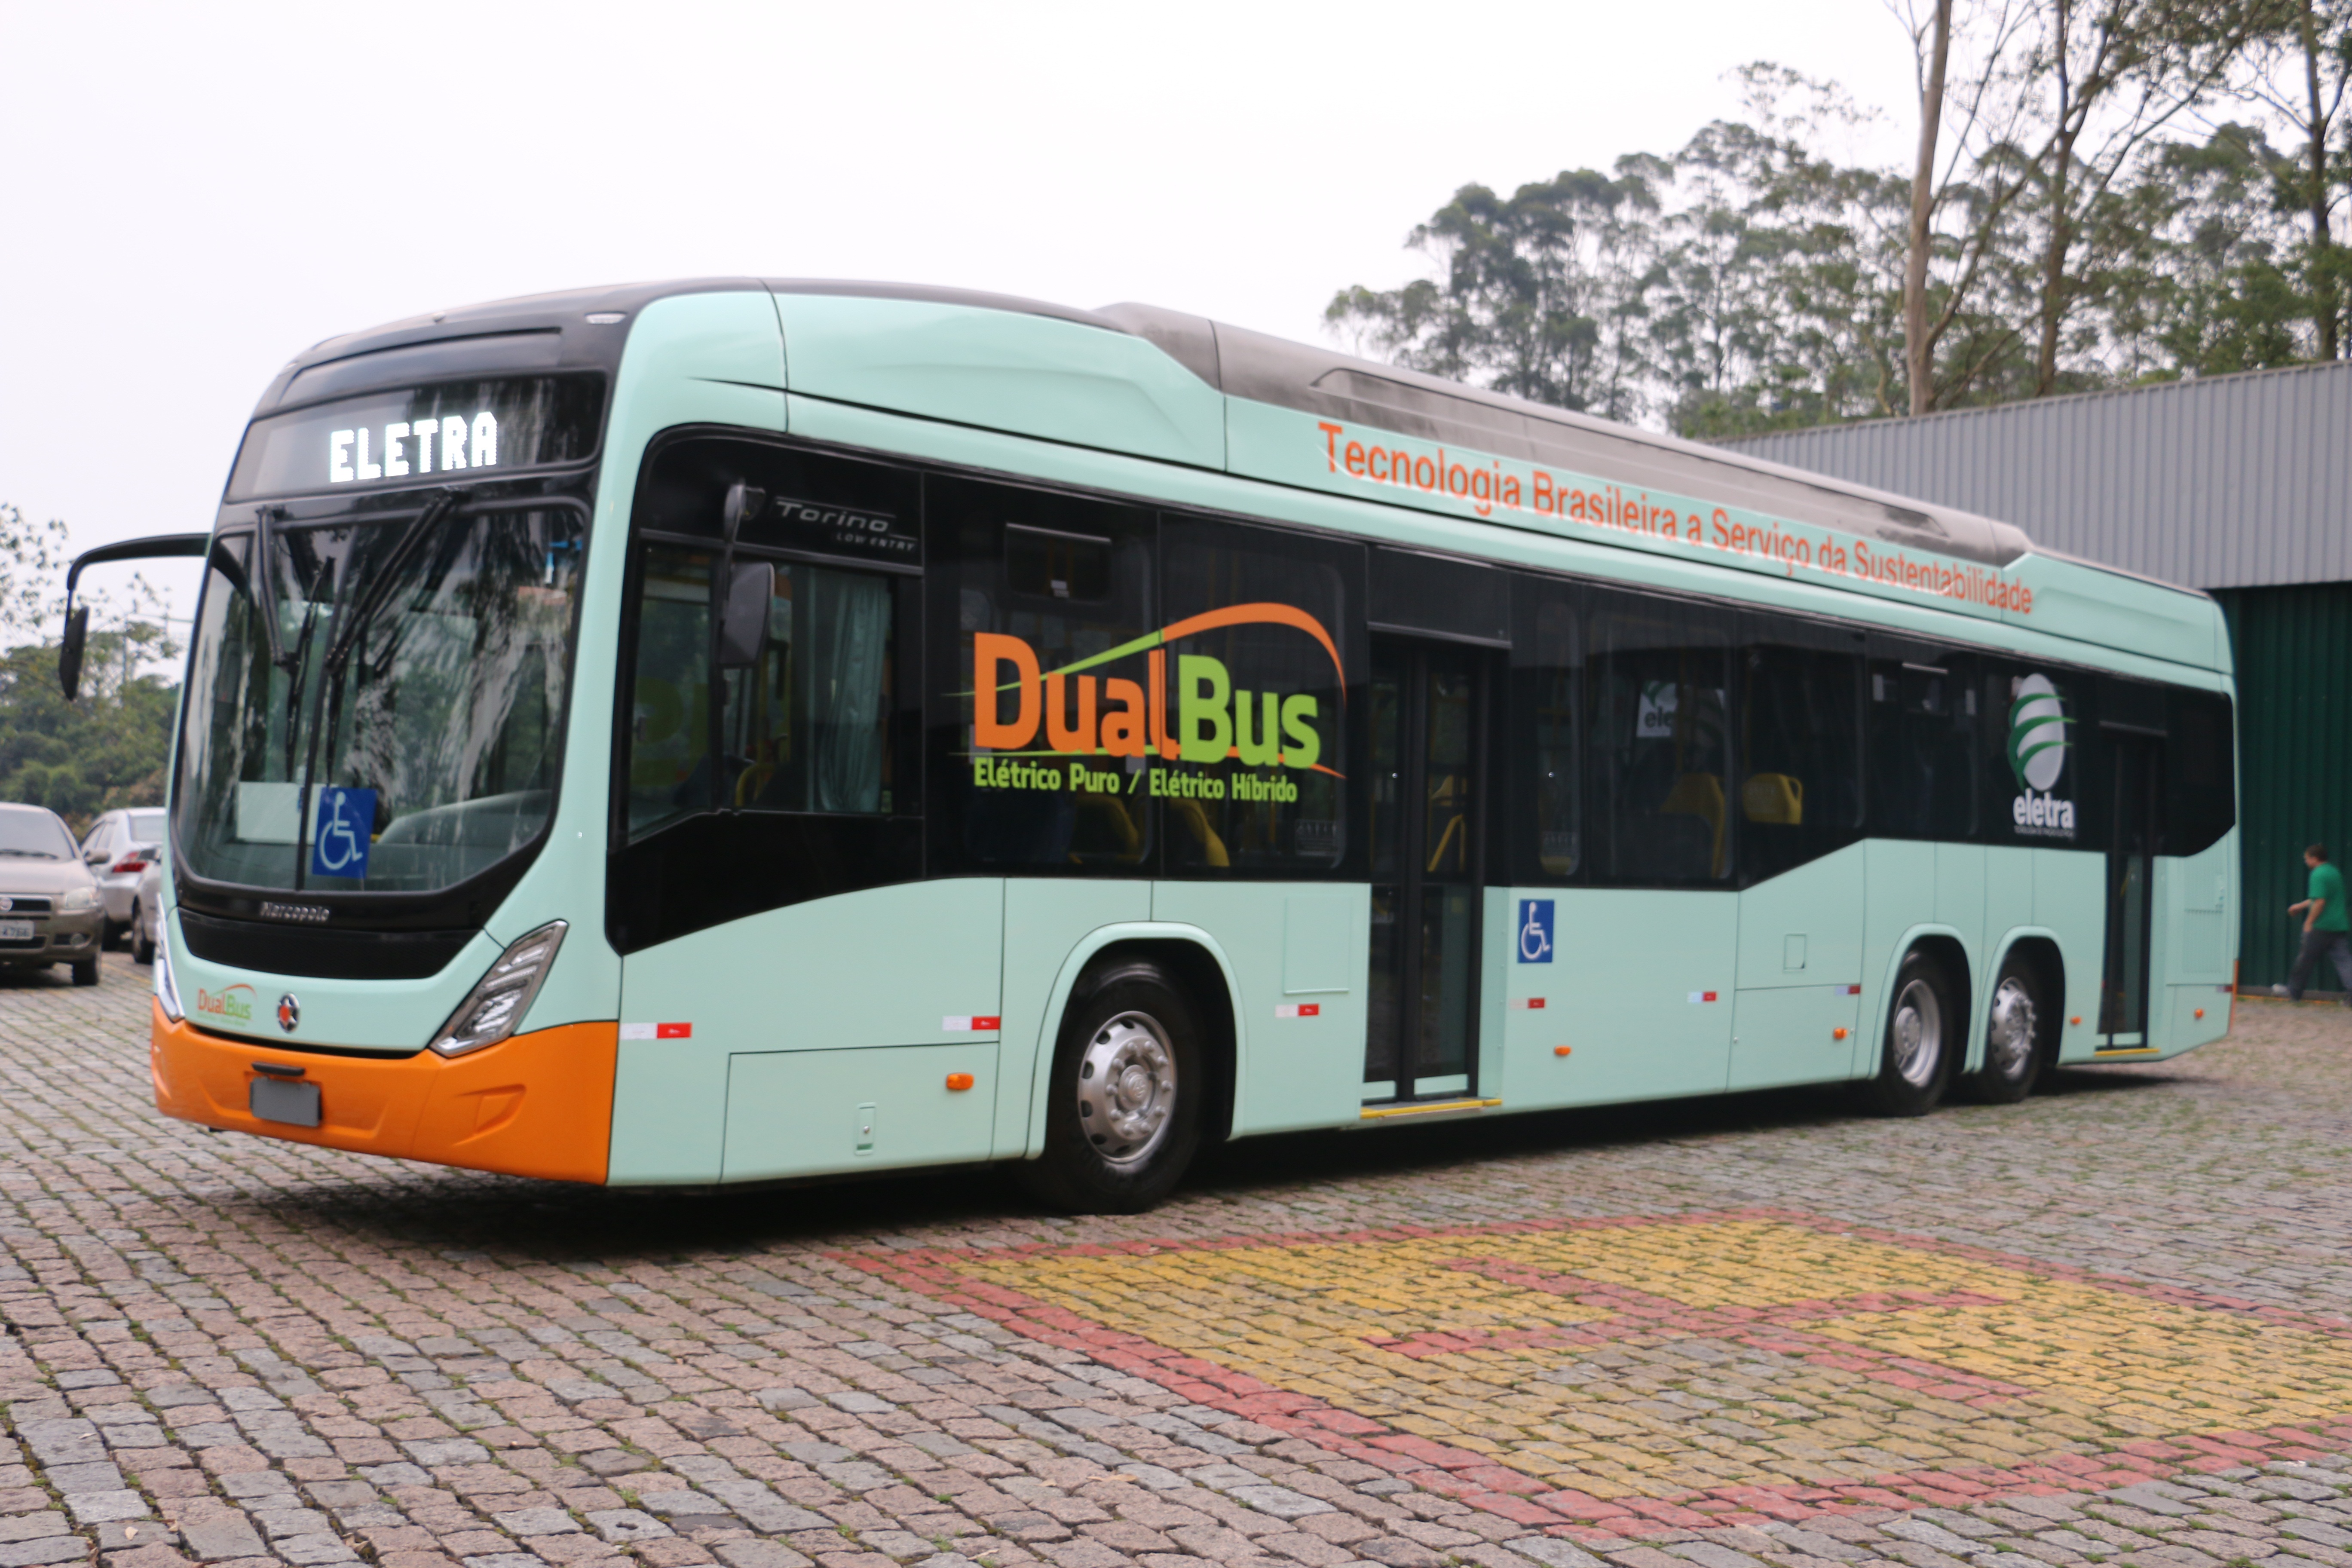 Perusahaan menghadirkan bus listrik dengan teknologi nasional 100%